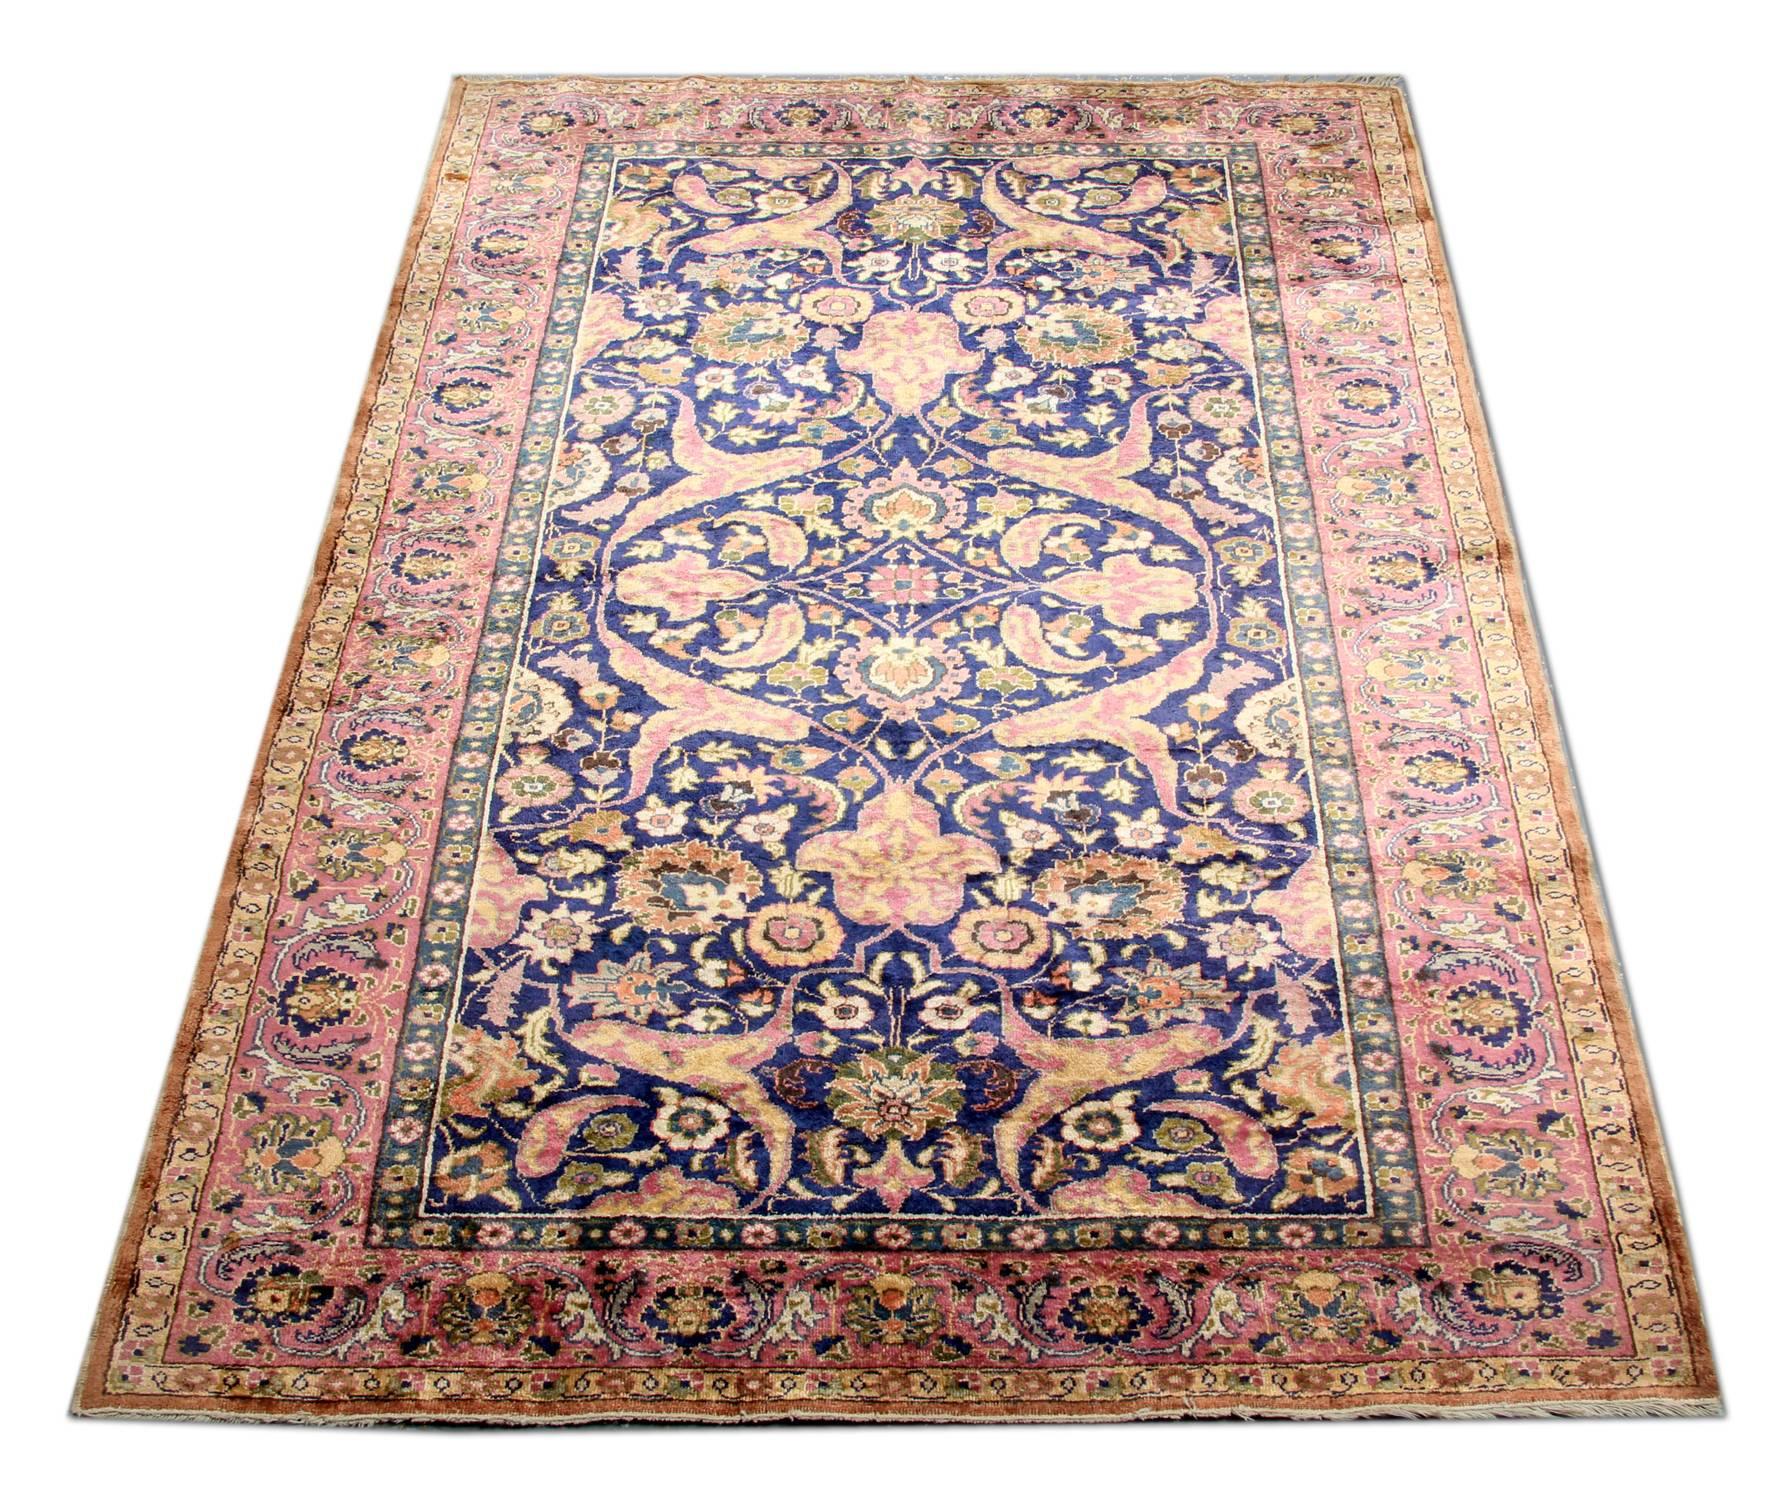 Dies ist ein Beispiel für handgefertigte Teppiche fein handgeknüpft Vintage Teppiche aus Zentral-Anatolien mit einem klassischen all-over floralen Teppich-Design von kleinen Mustern. Der hochwertige Wollflor auf einem starken Seidenfundament und der